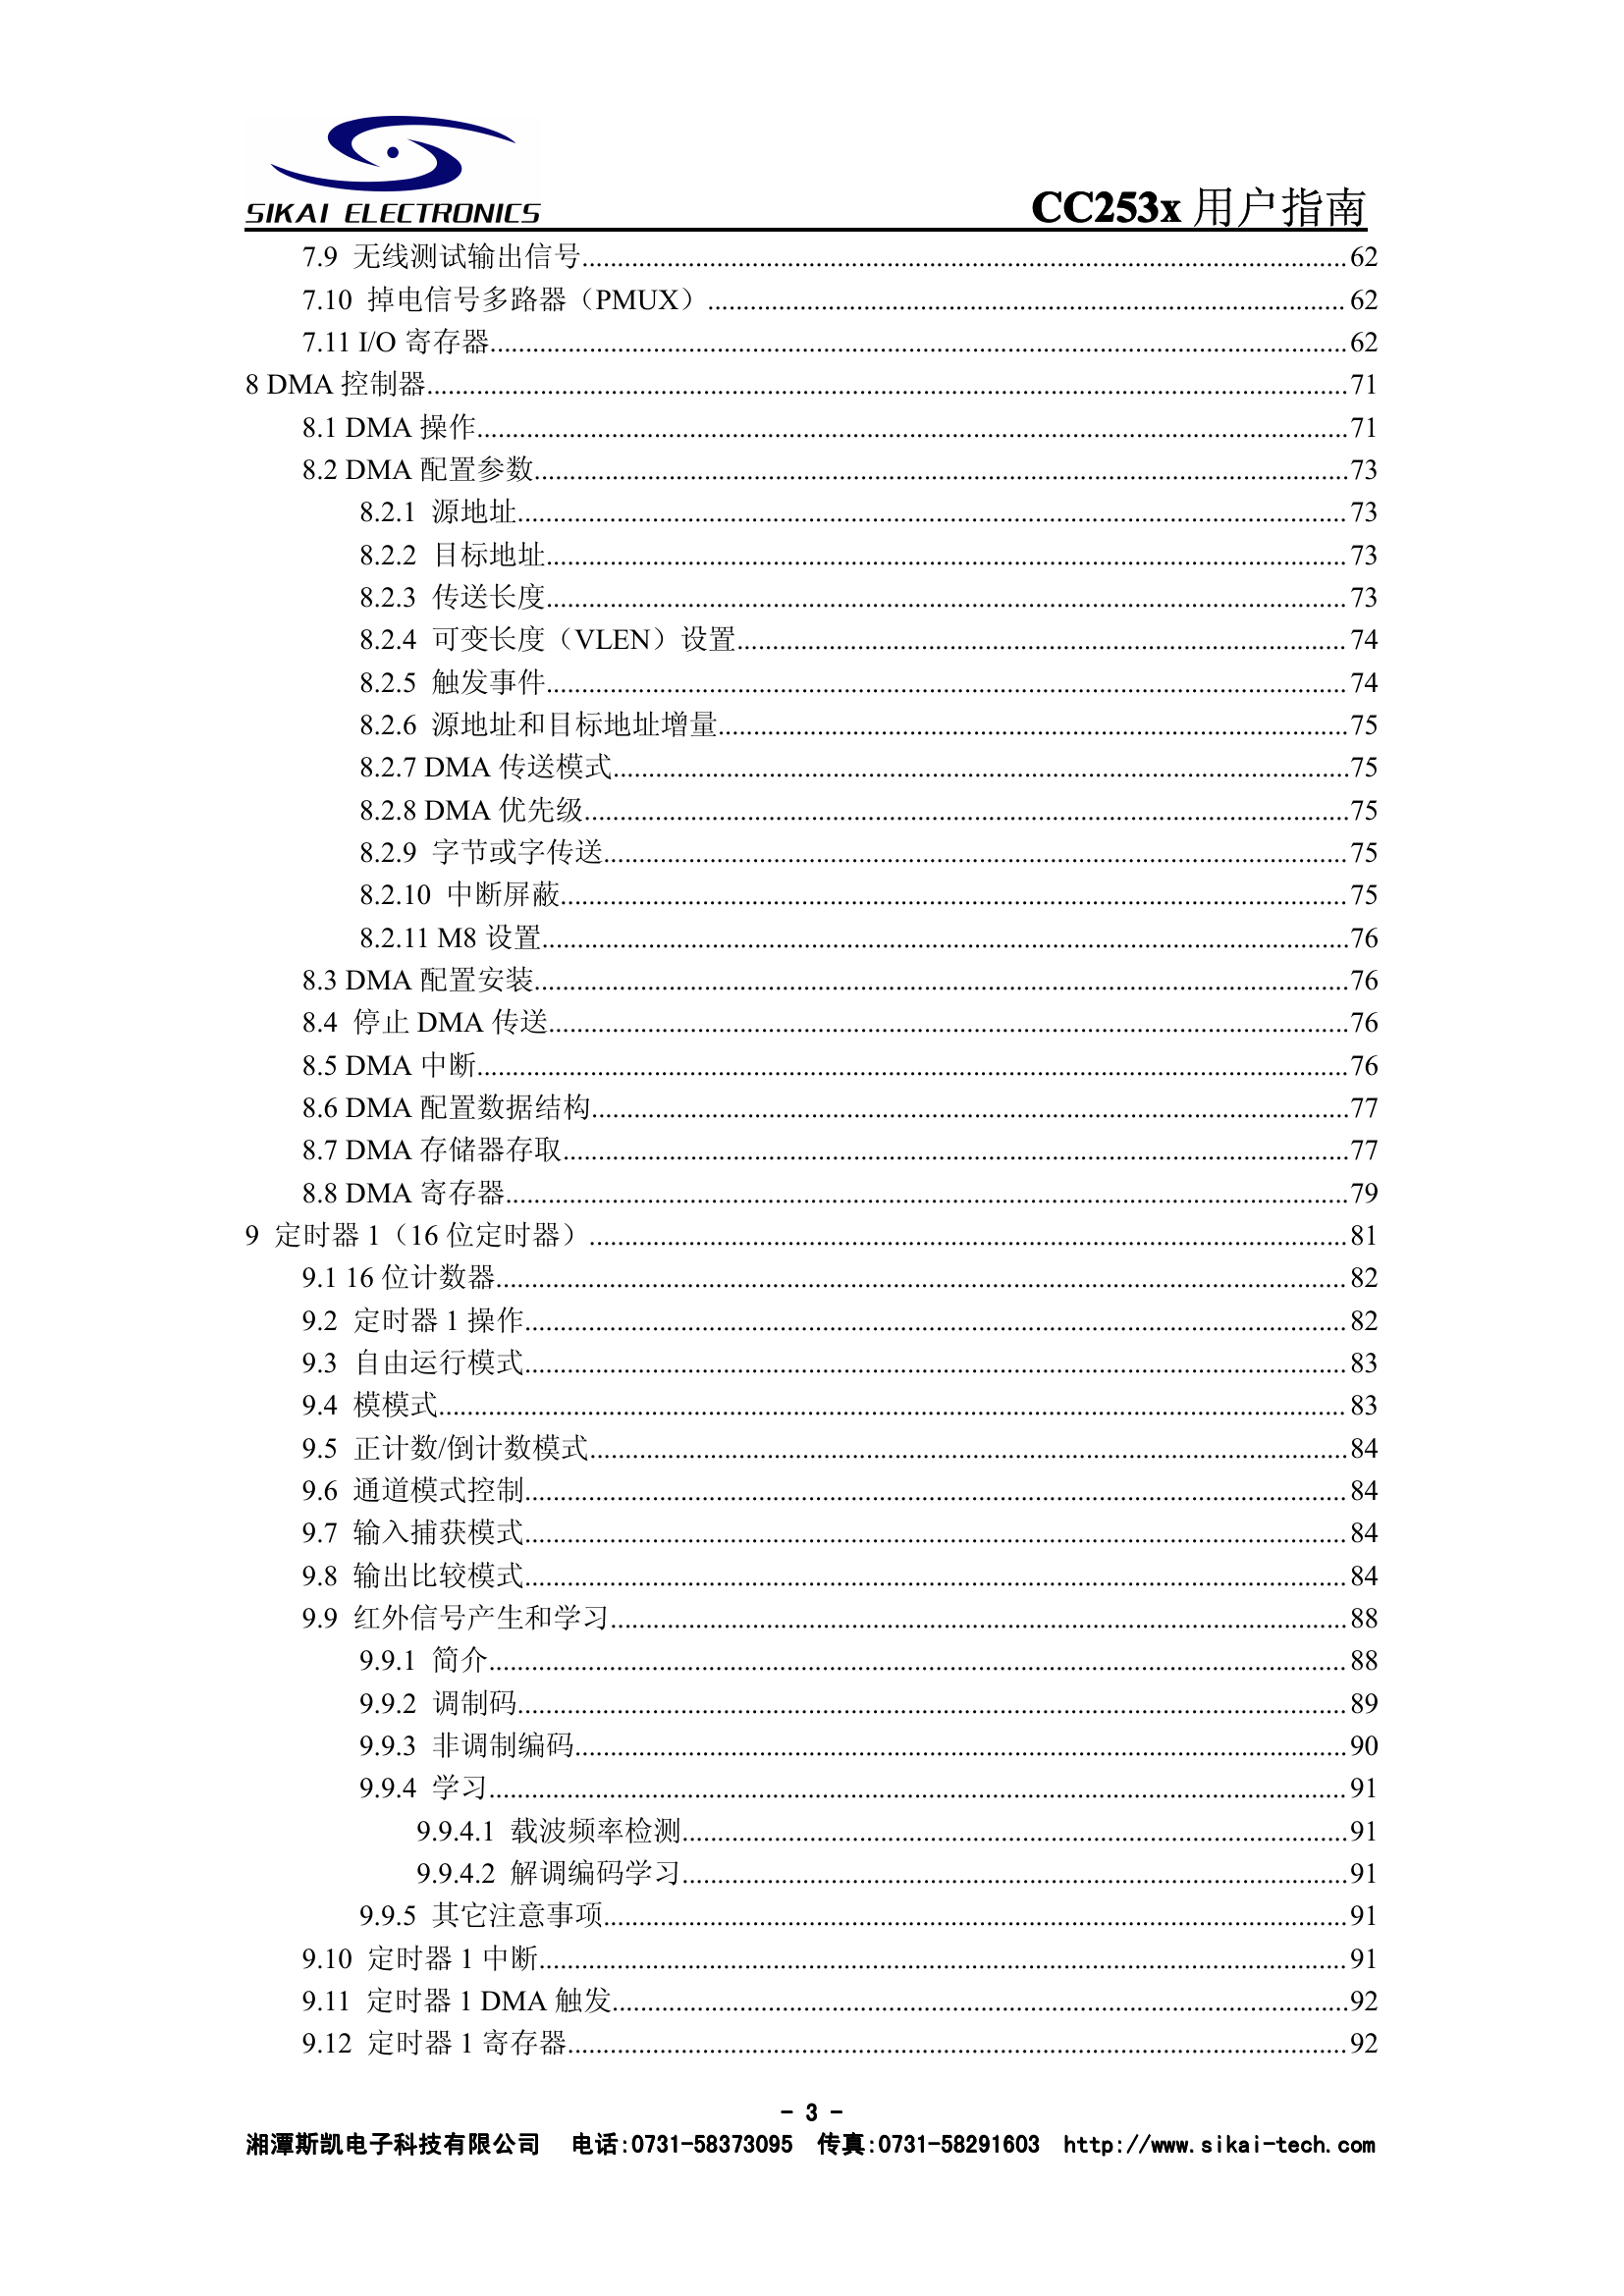 CC253x用户指南(中文).pdf-第4页.png